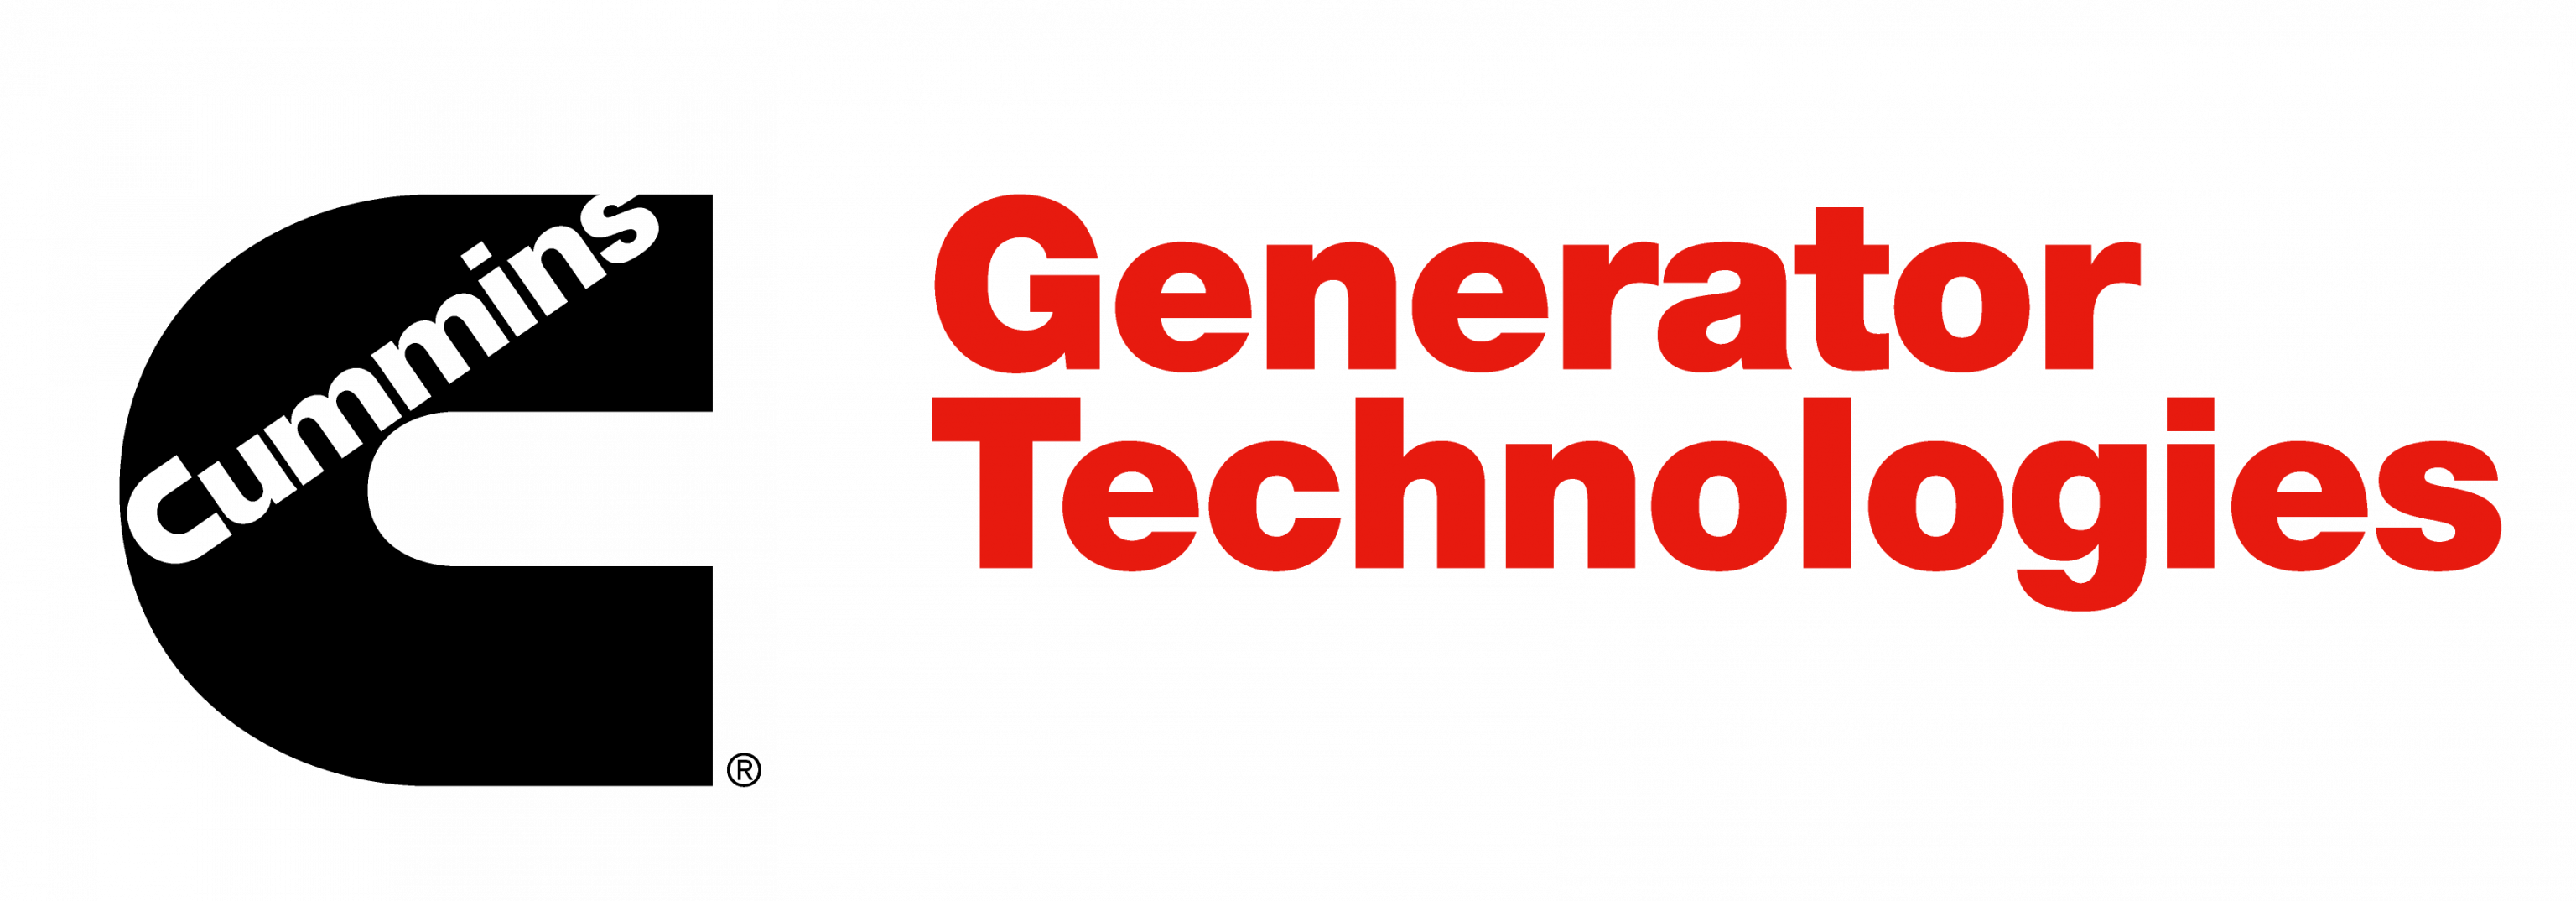 CGT logo-透明背景黑红.png